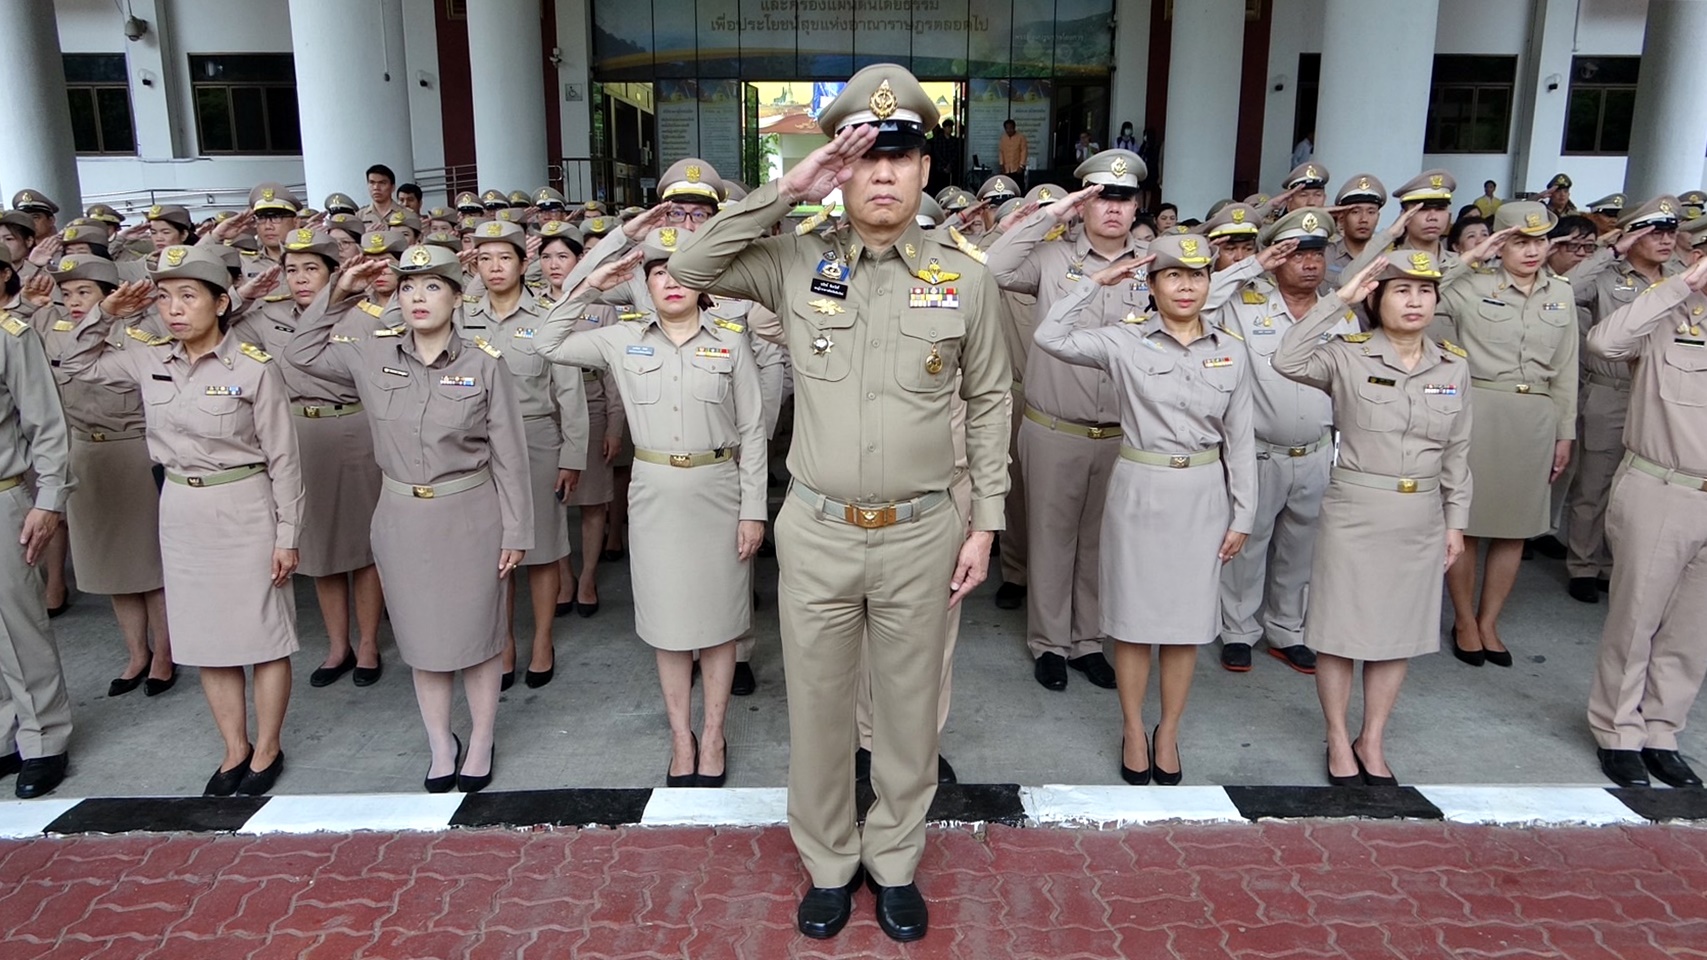 เชียงใหม่ จัดกิจกรรมเคารพธงชาติ เนื่องในวันพระราชทานธงชาติไทย ประจำปี 2566